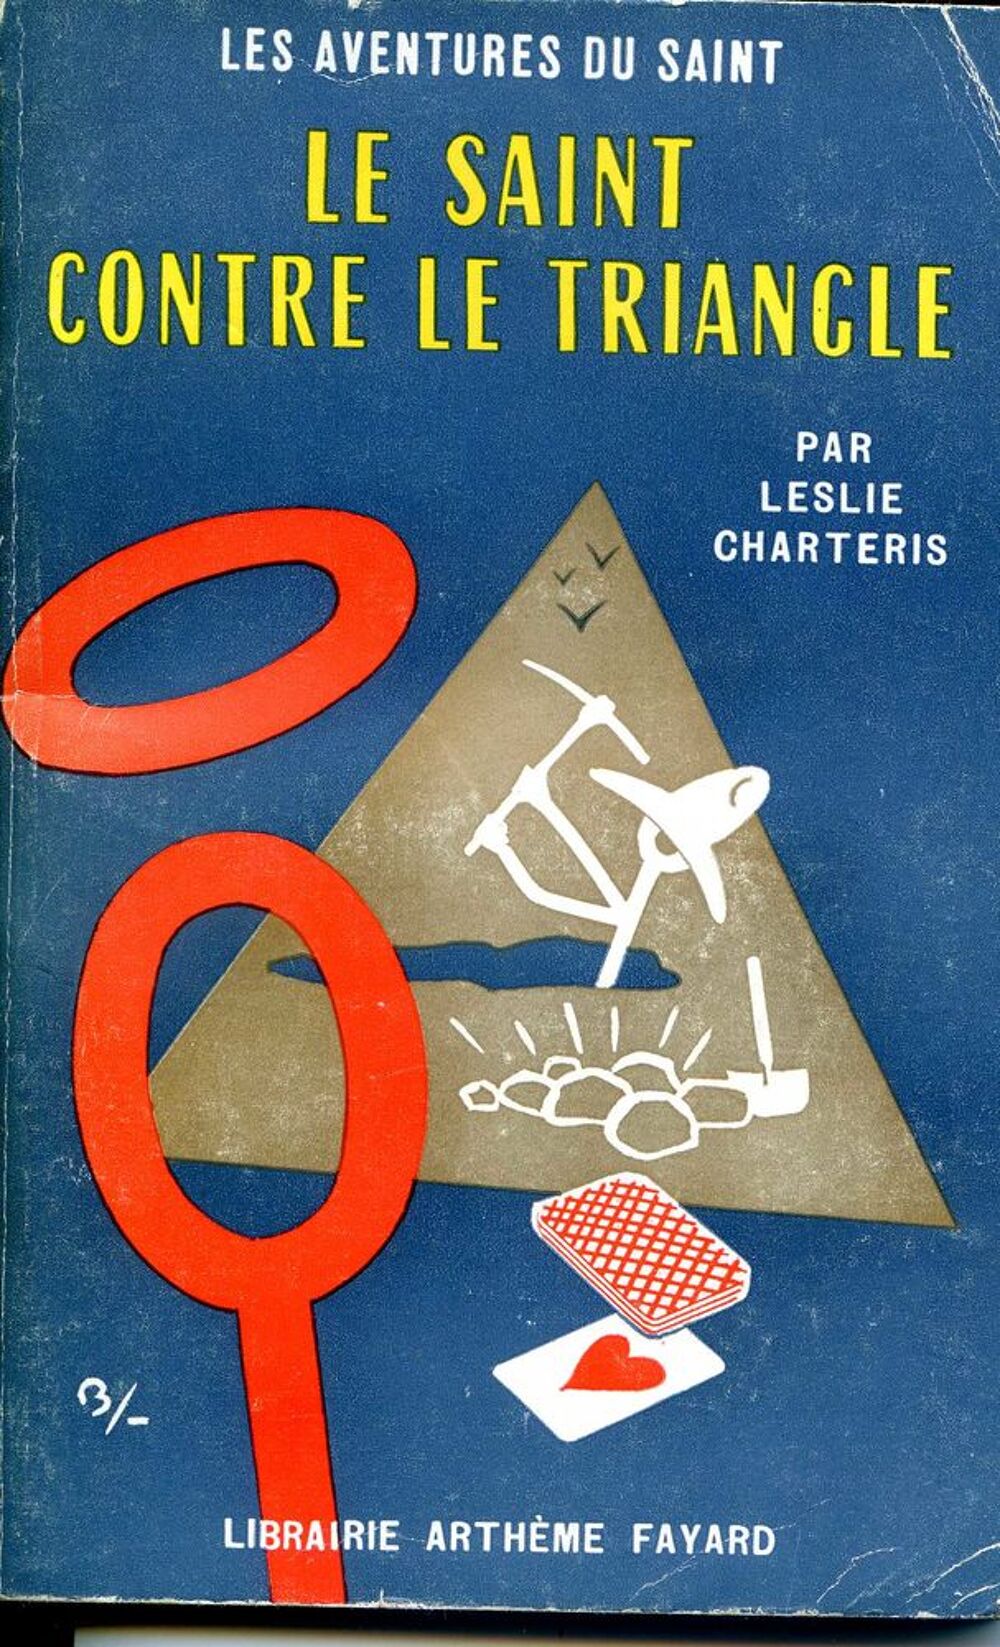 Le saint contre le triangle- Leslie CharterIs, Livres et BD